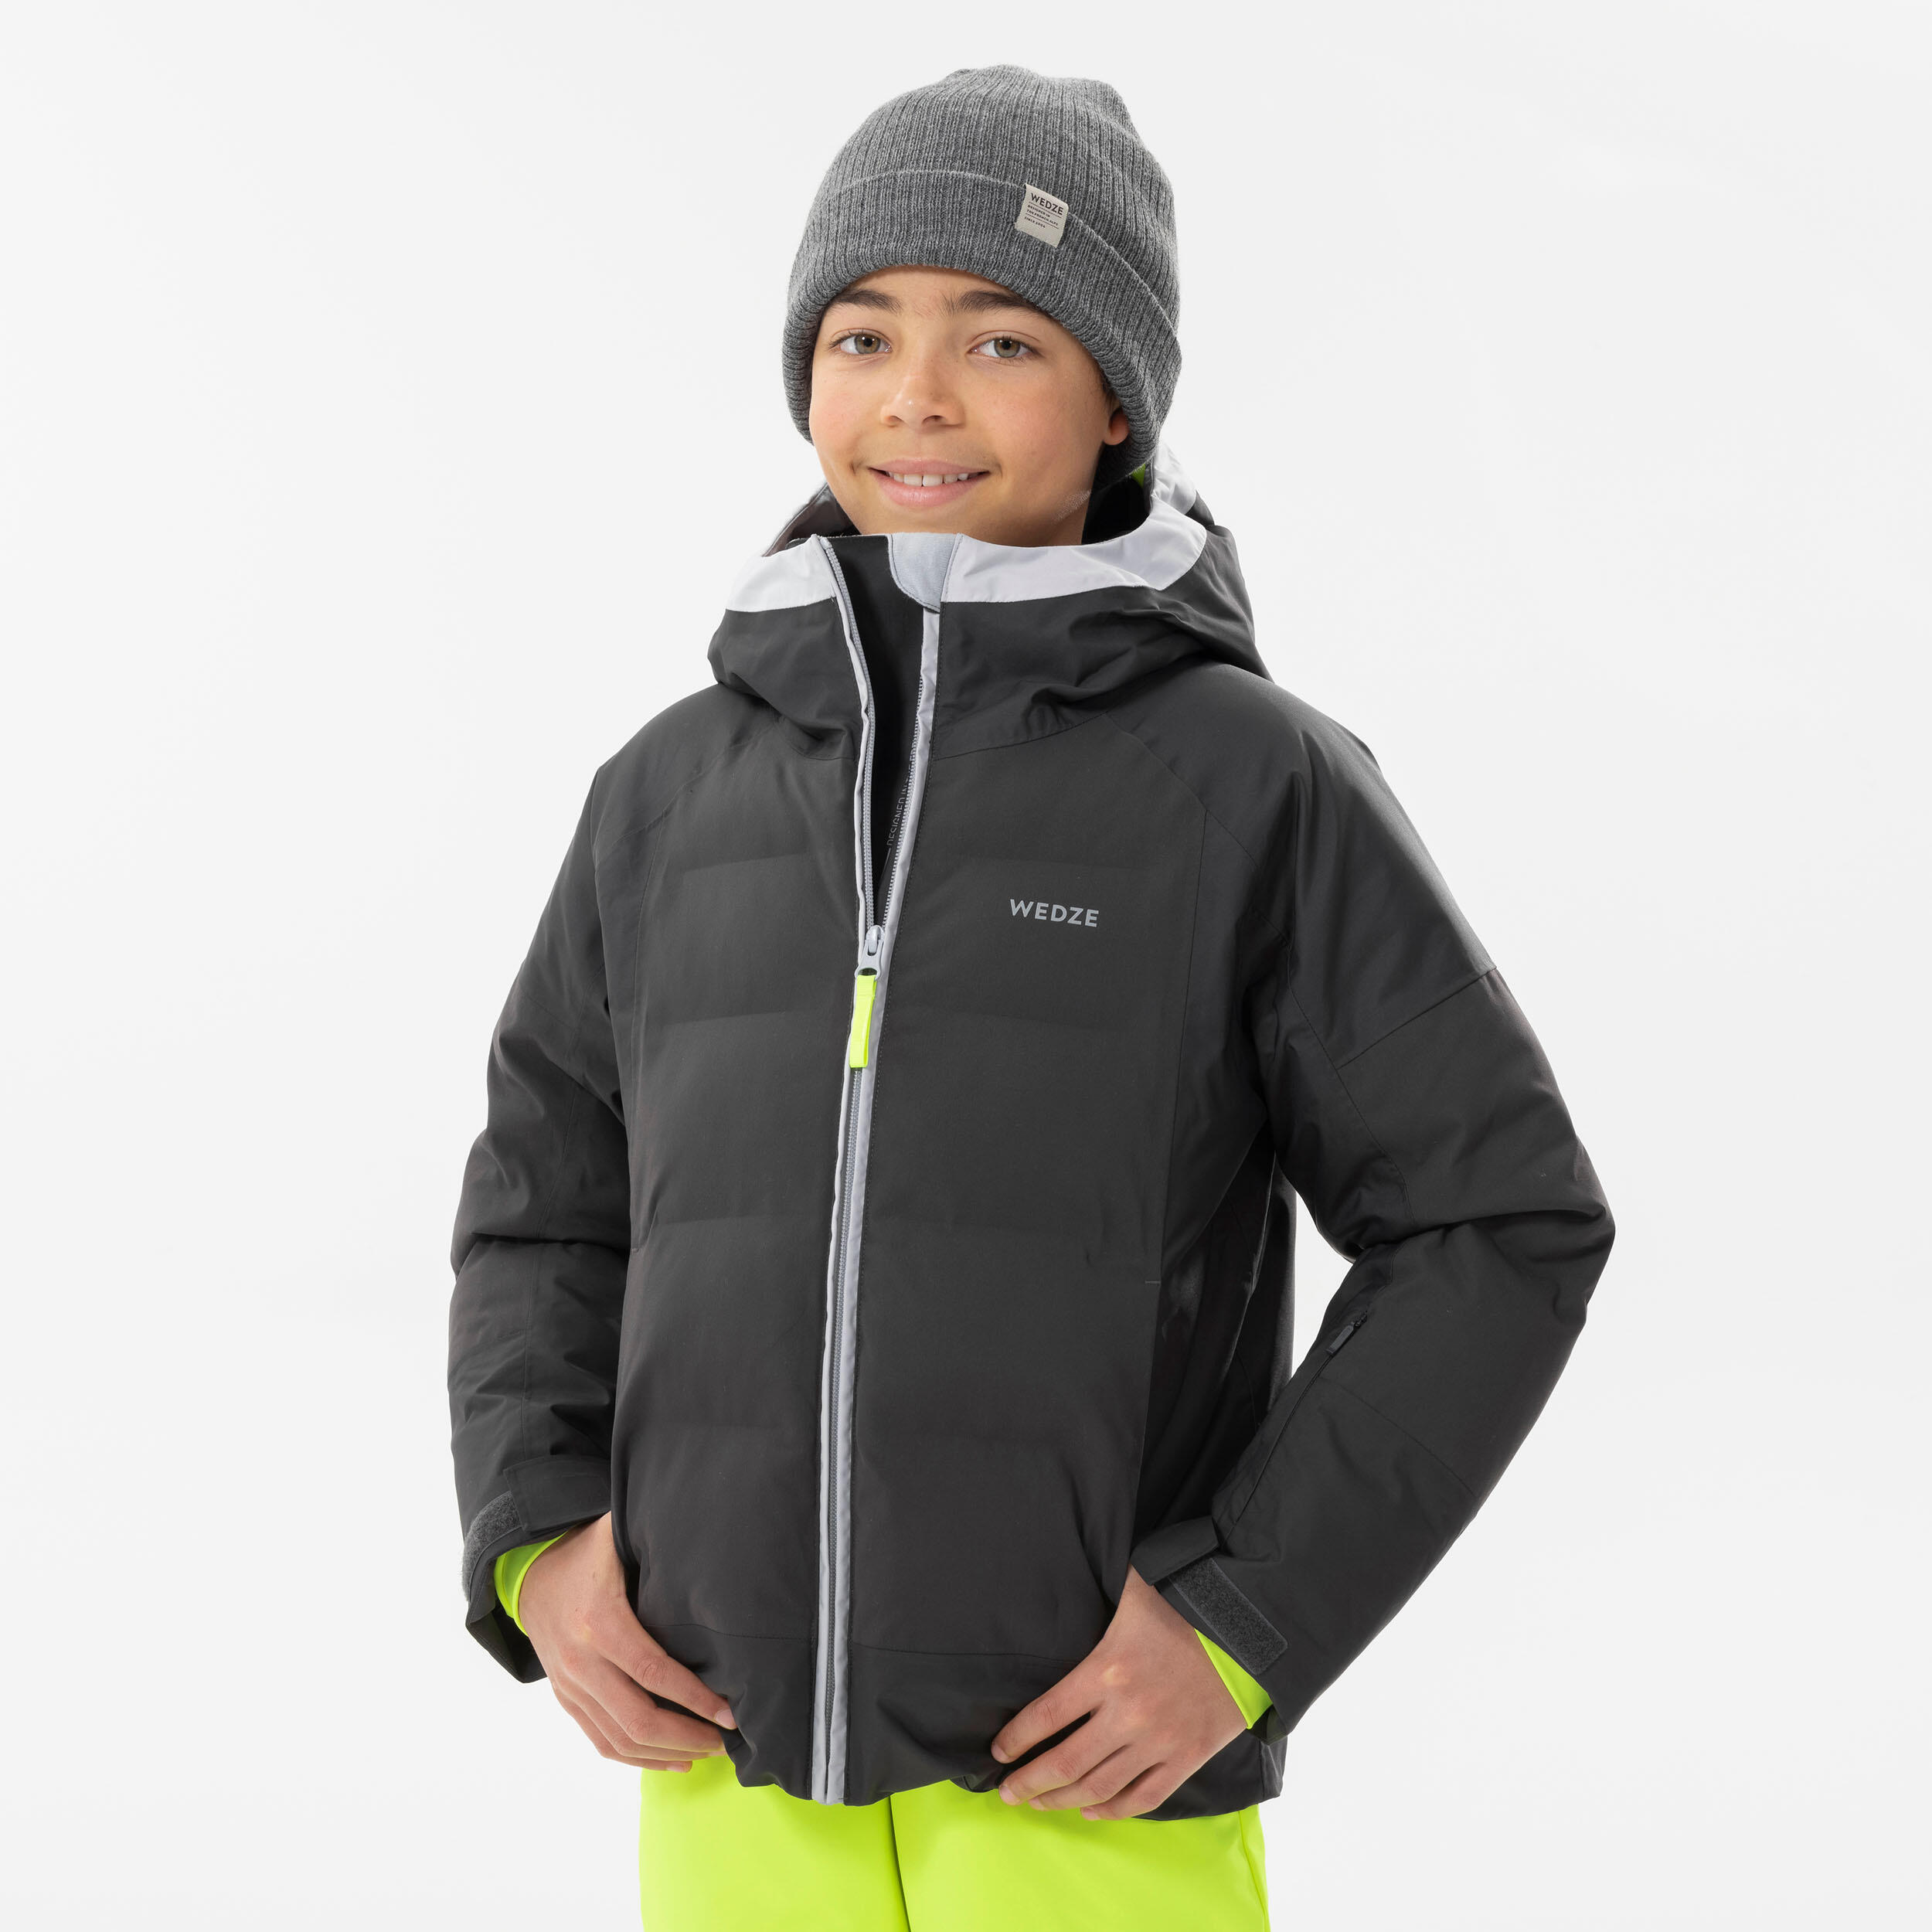 Kids Skiing Waterproof Winter Jacket 580 - Grey